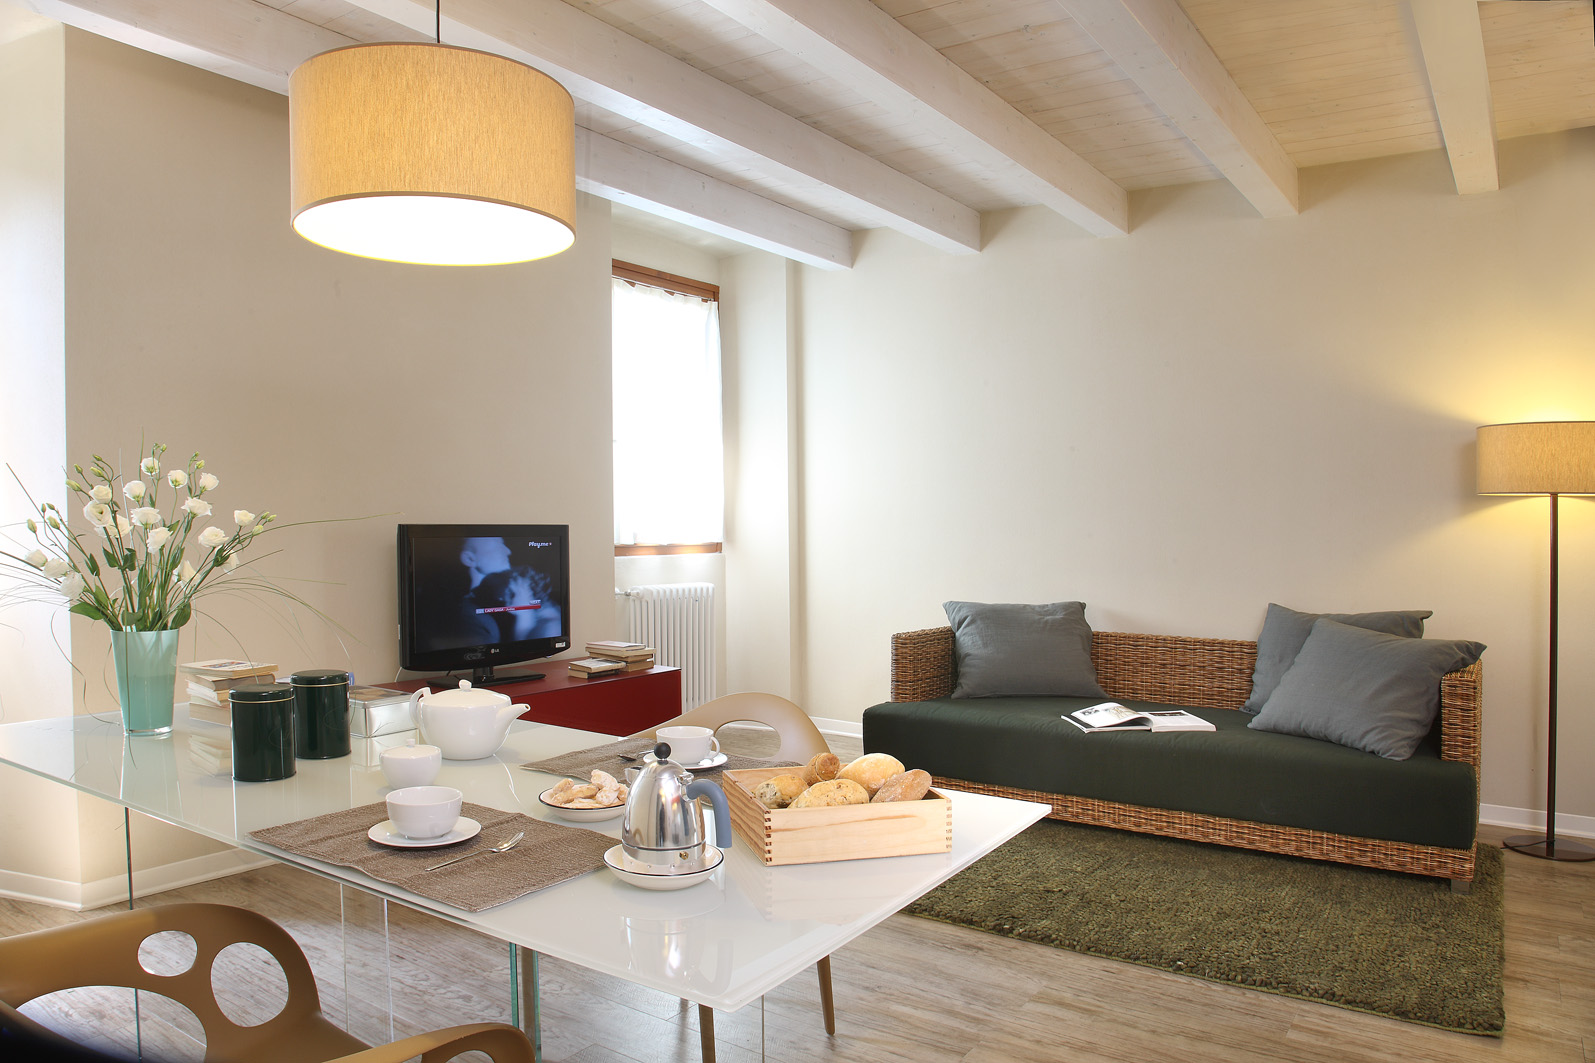 Corte San Luca Apartments - Bardolino. Vacanze - Lago di Garda